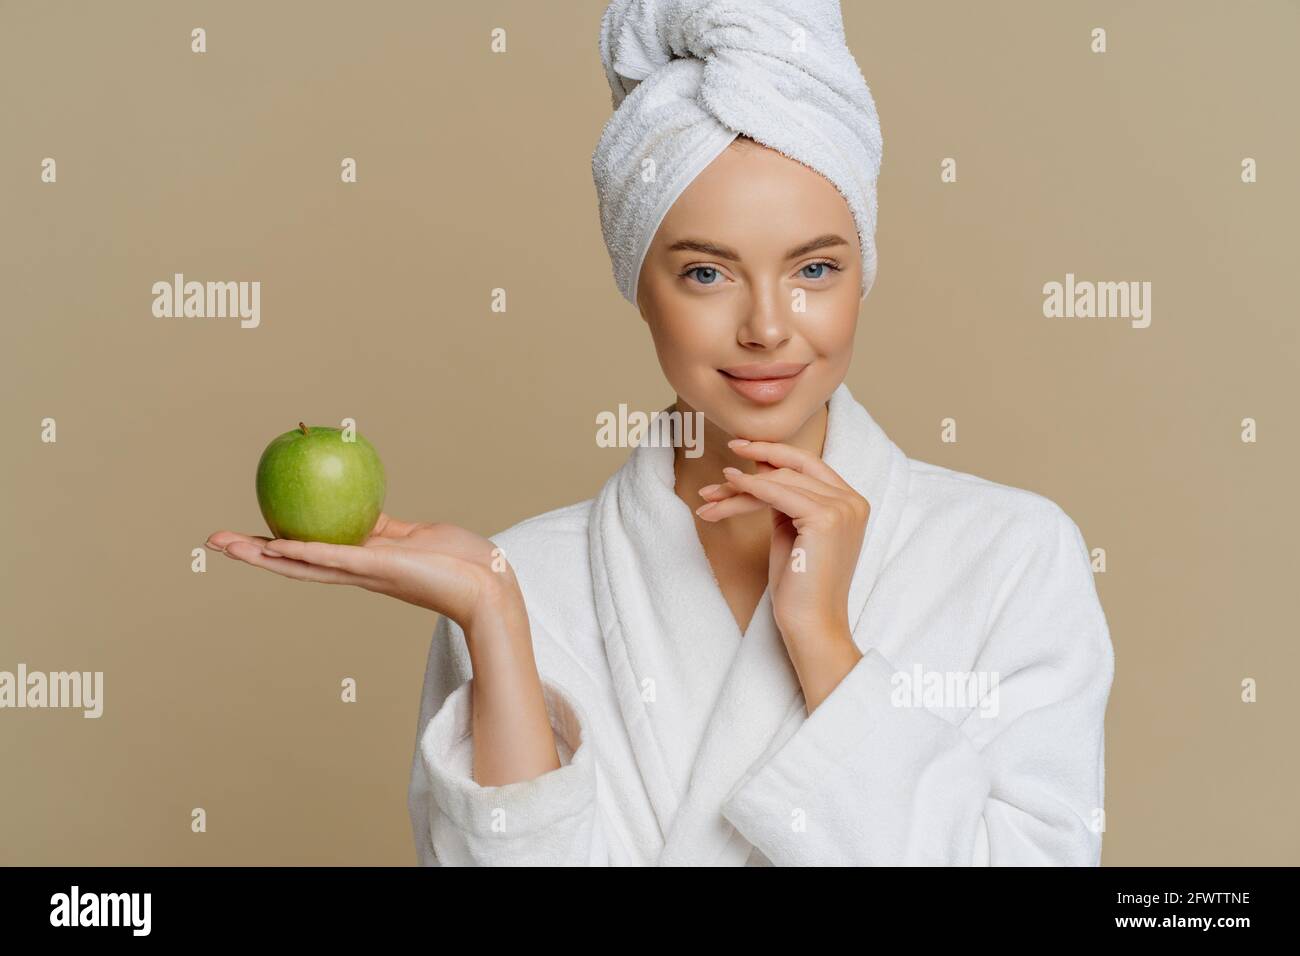 Bonne jeune femme européenne a la peau lumineuse parfaite hods la pomme verte fraîche subit des procédures de beauté à la maison habillée vinaigrette blanche pour le bain Banque D'Images